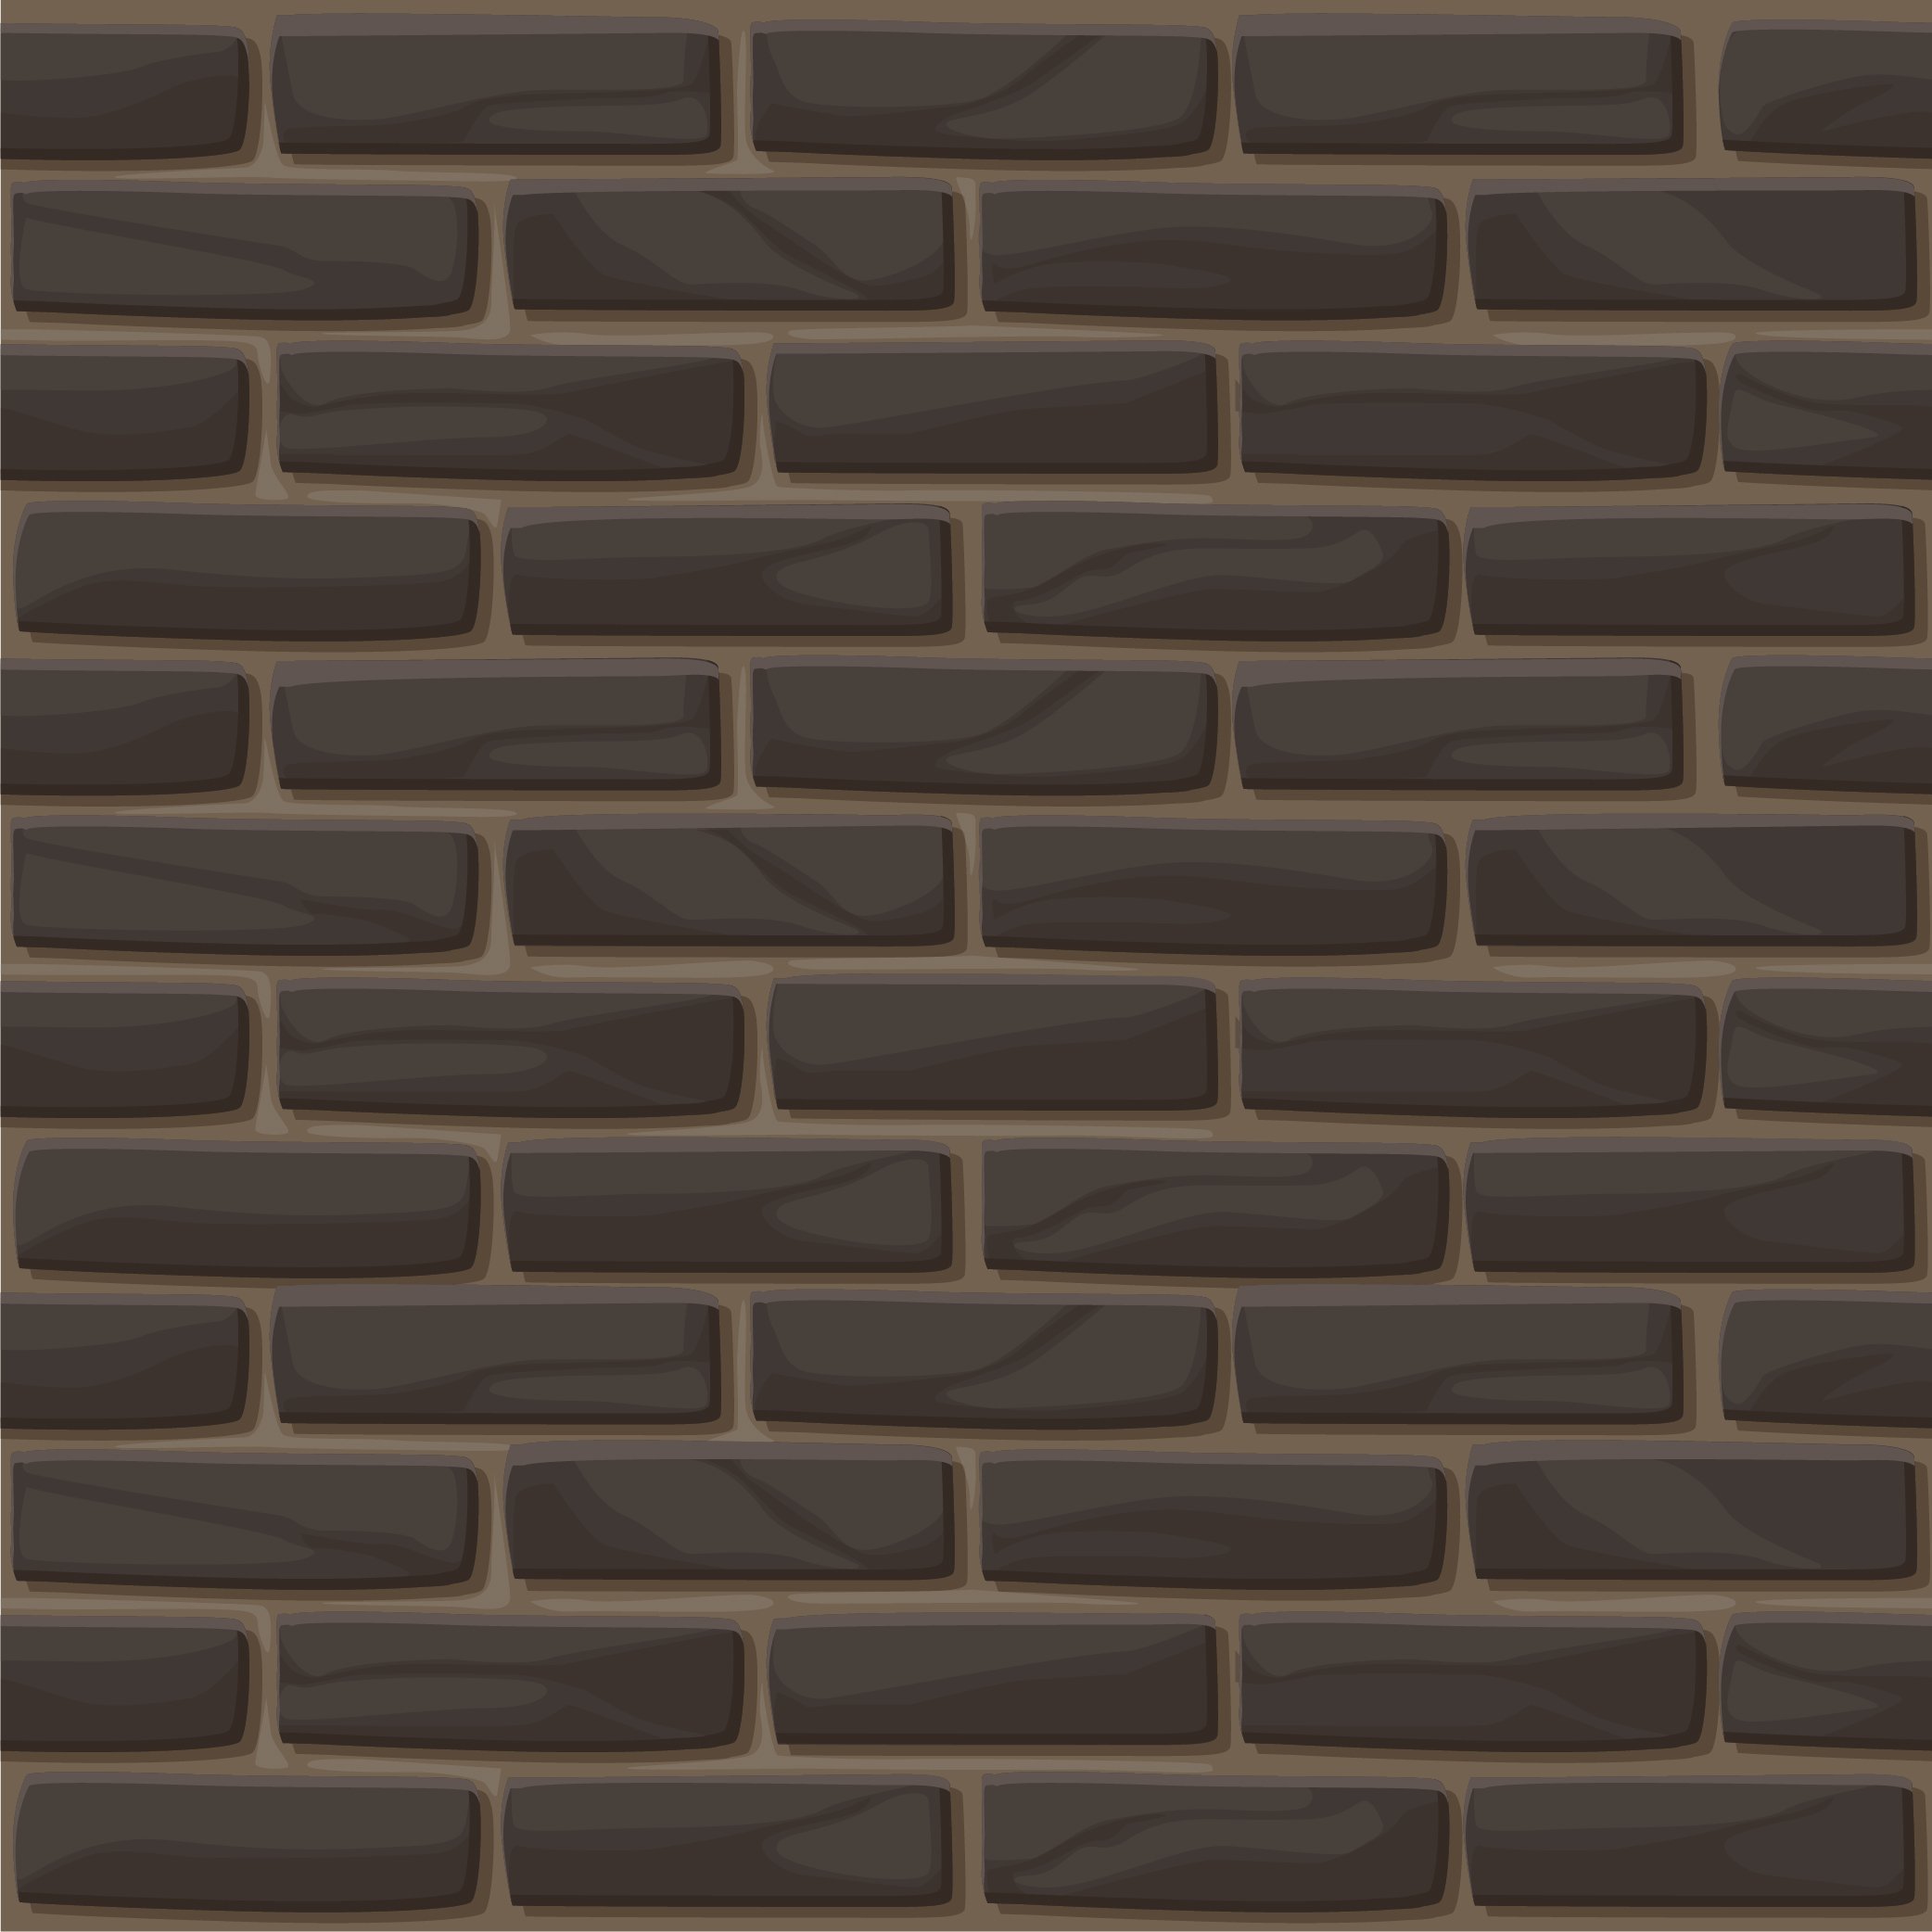 brick wall4 01 695